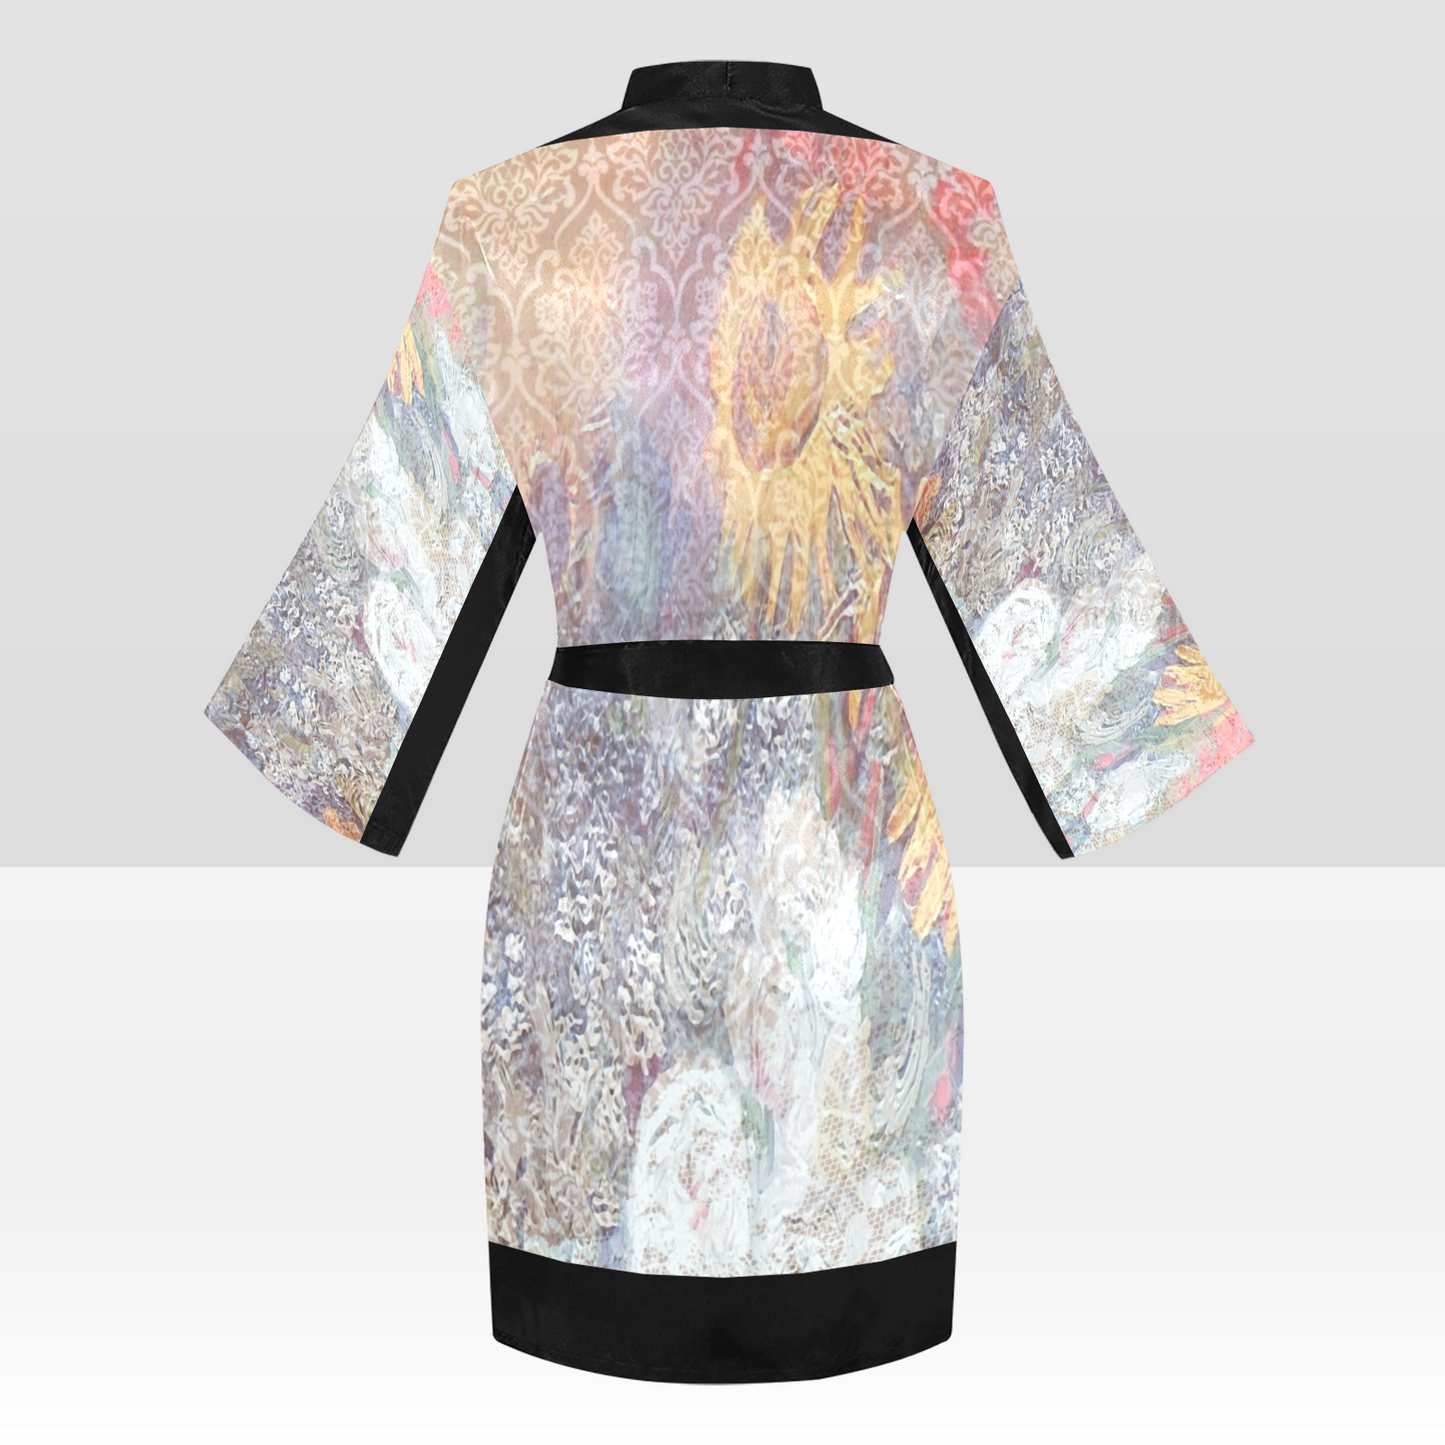 Vintage Floral Kimono Robe, Black or White Trim, Sizes XS to 2XL, Design 54x